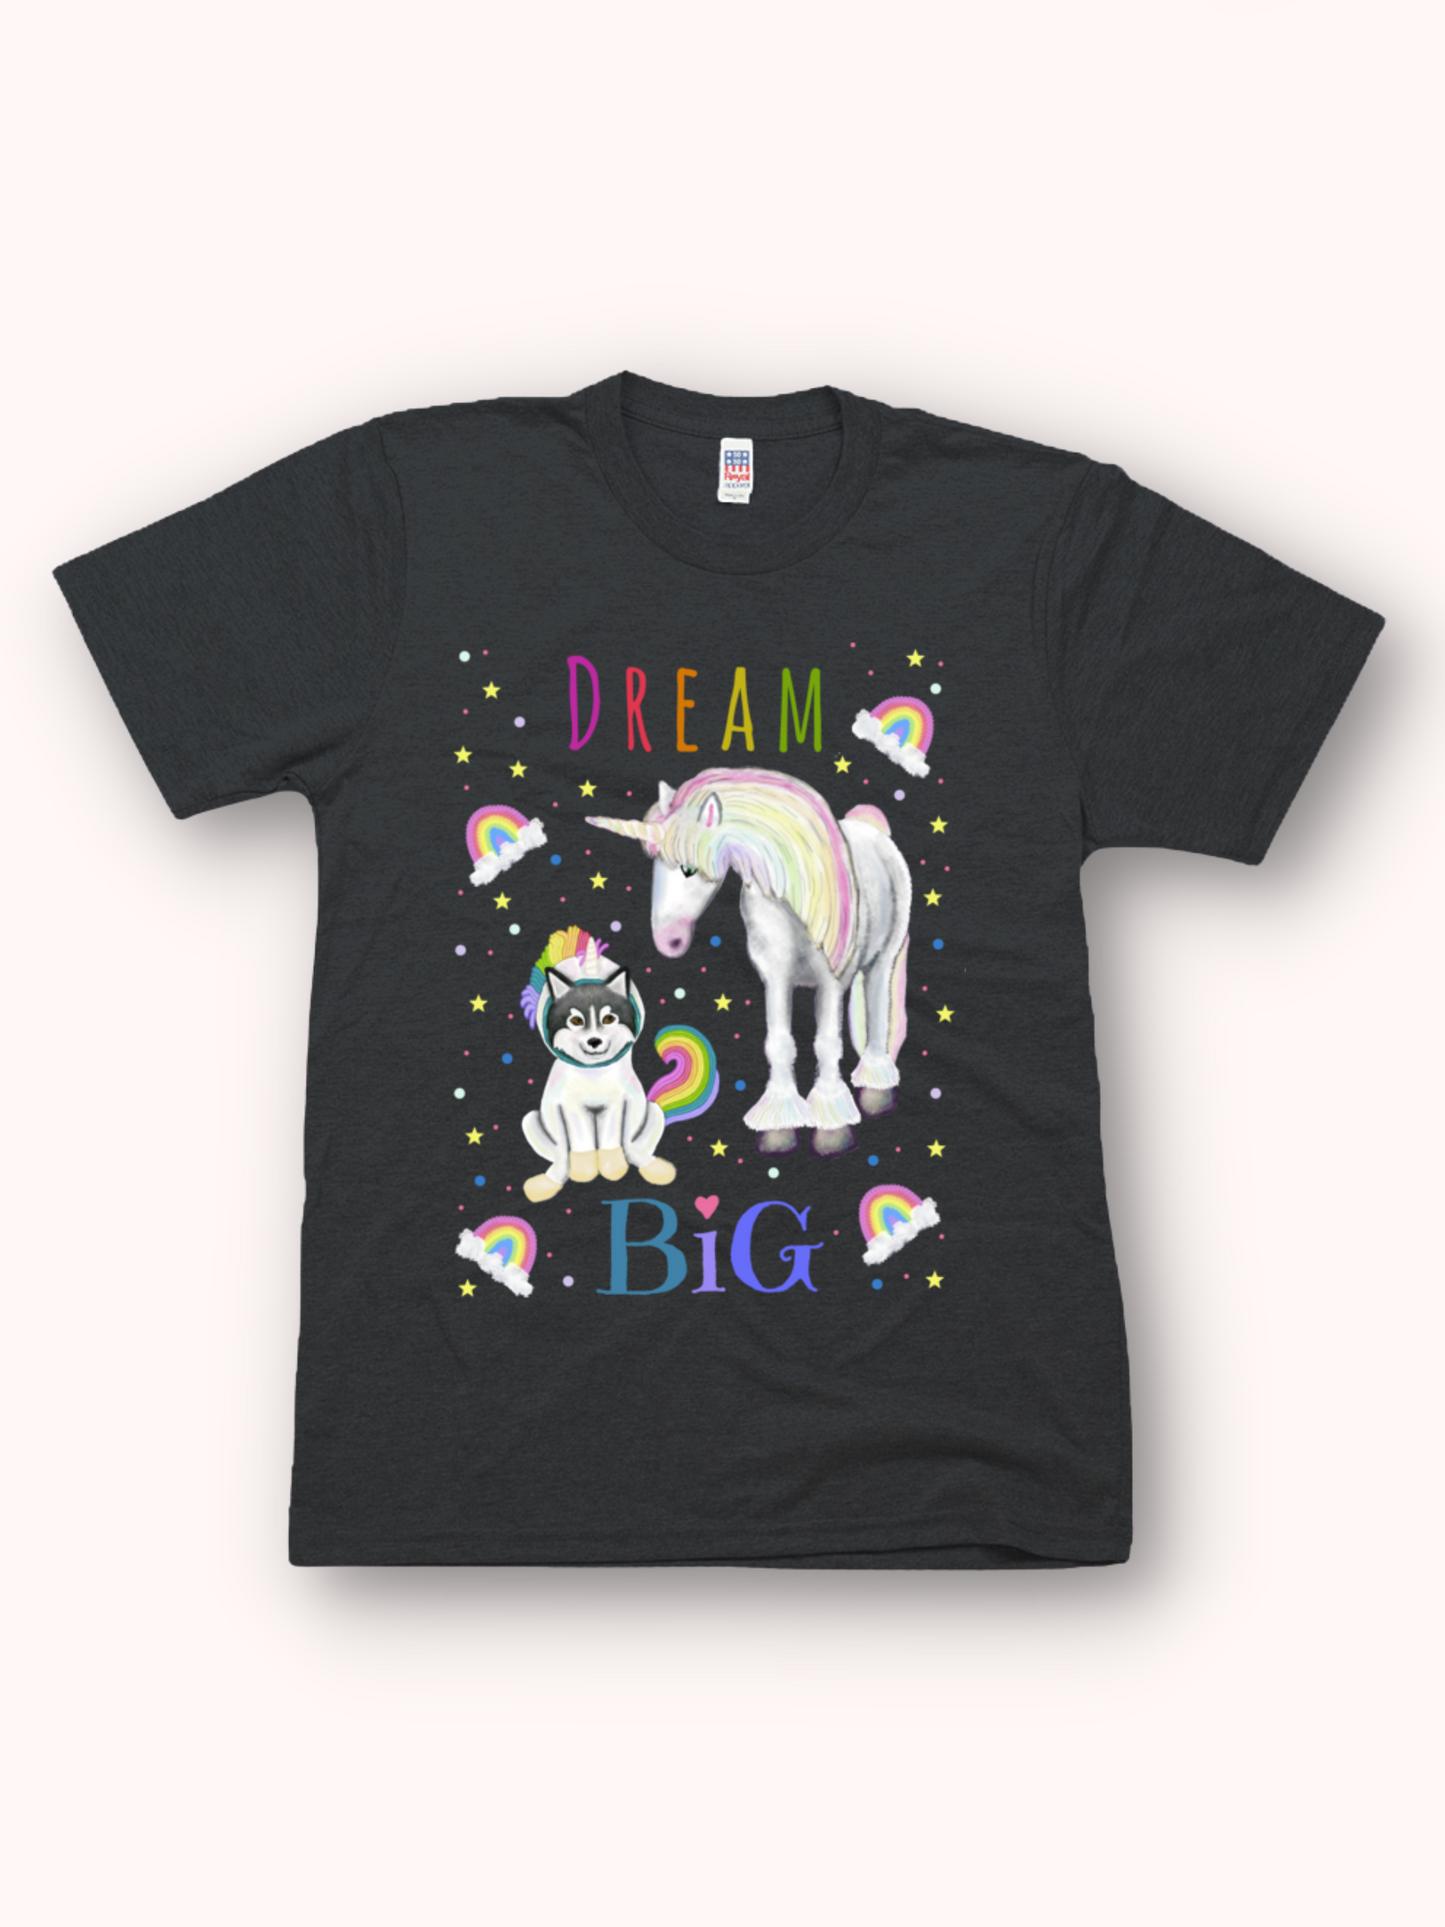 Dream Big - Unisex - USA Made soft Jersey T-shirt Rainbow Script